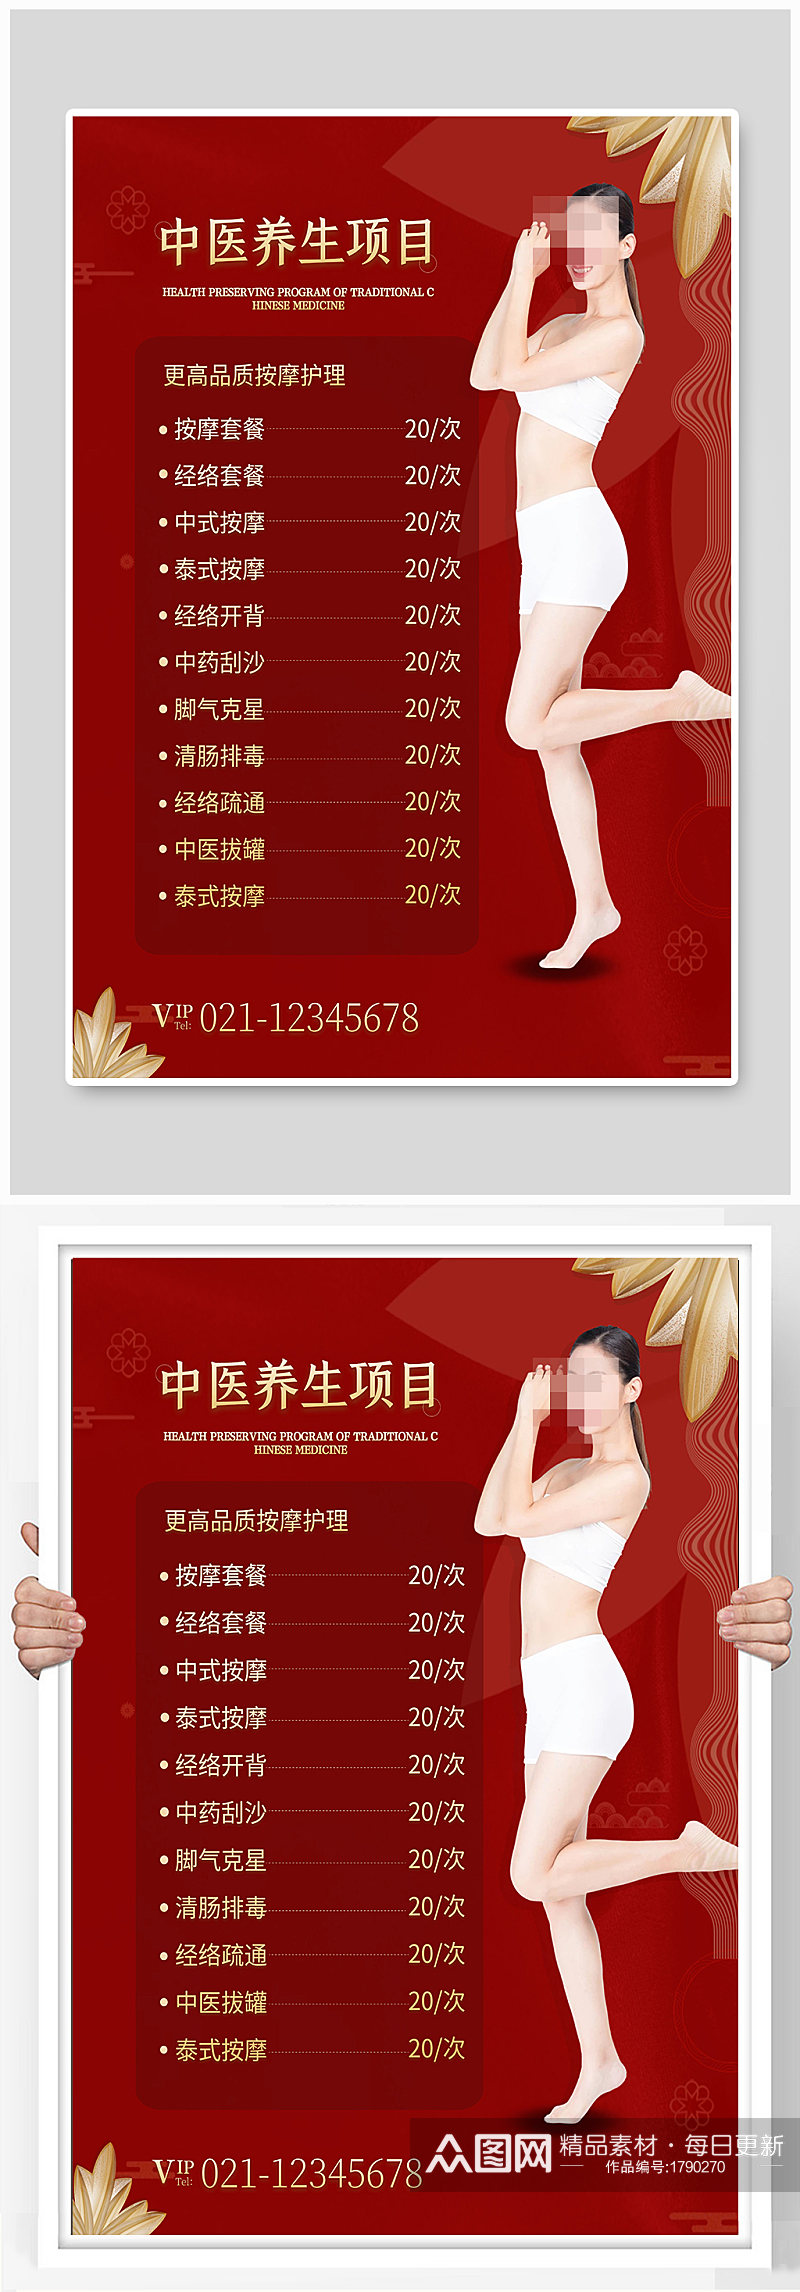 中医养生项目宣传海报设计素材